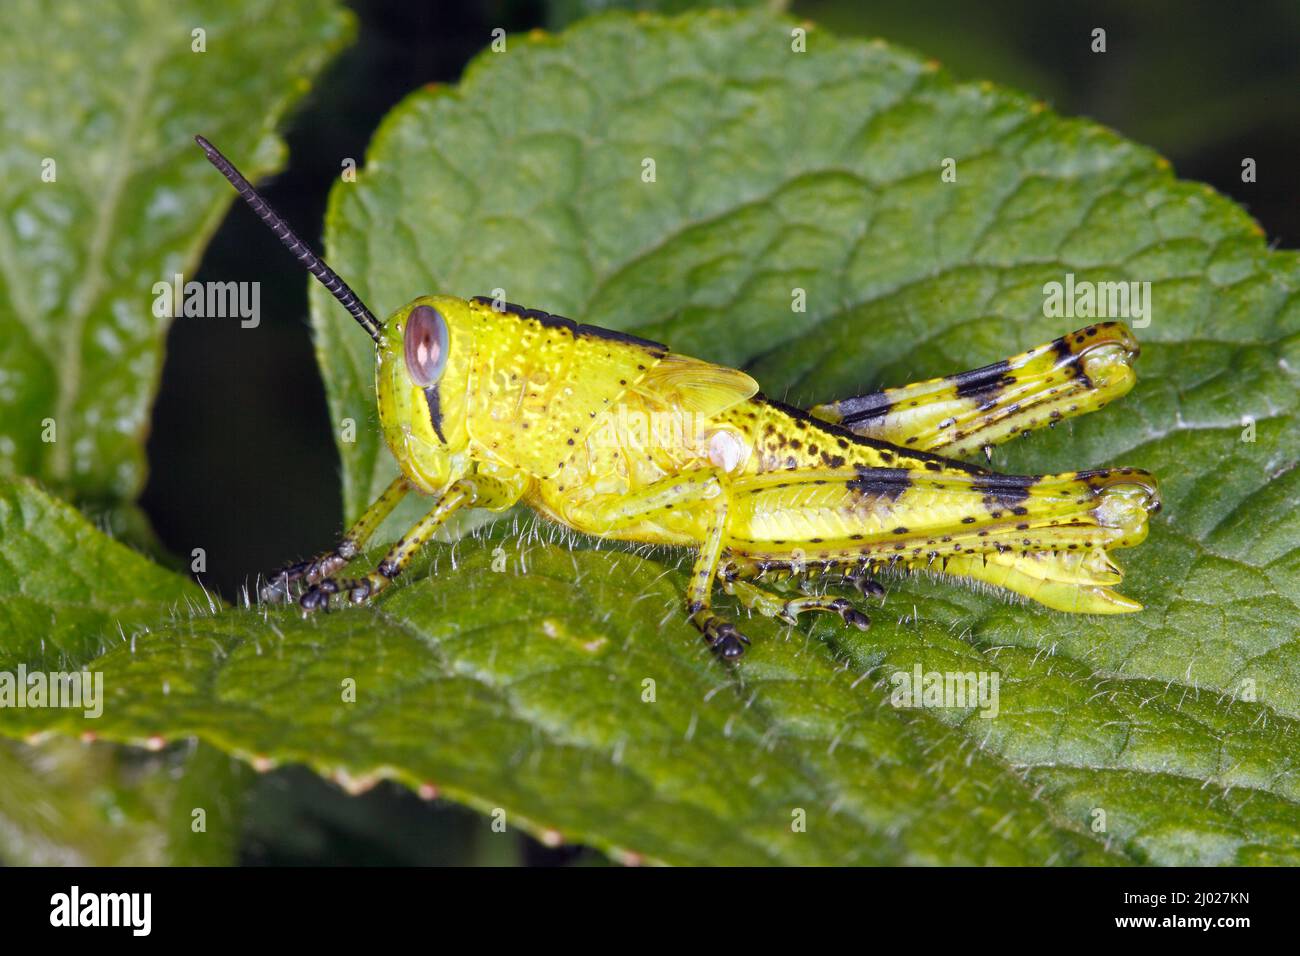 Giant Grasshopper, Valanga irregularis. Également connu sous le nom de Giant Valanga ou Hedge Grasshopper. Vert vif nymphe. Coffs Harbour, Nouvelle-Galles du Sud, Australie Banque D'Images